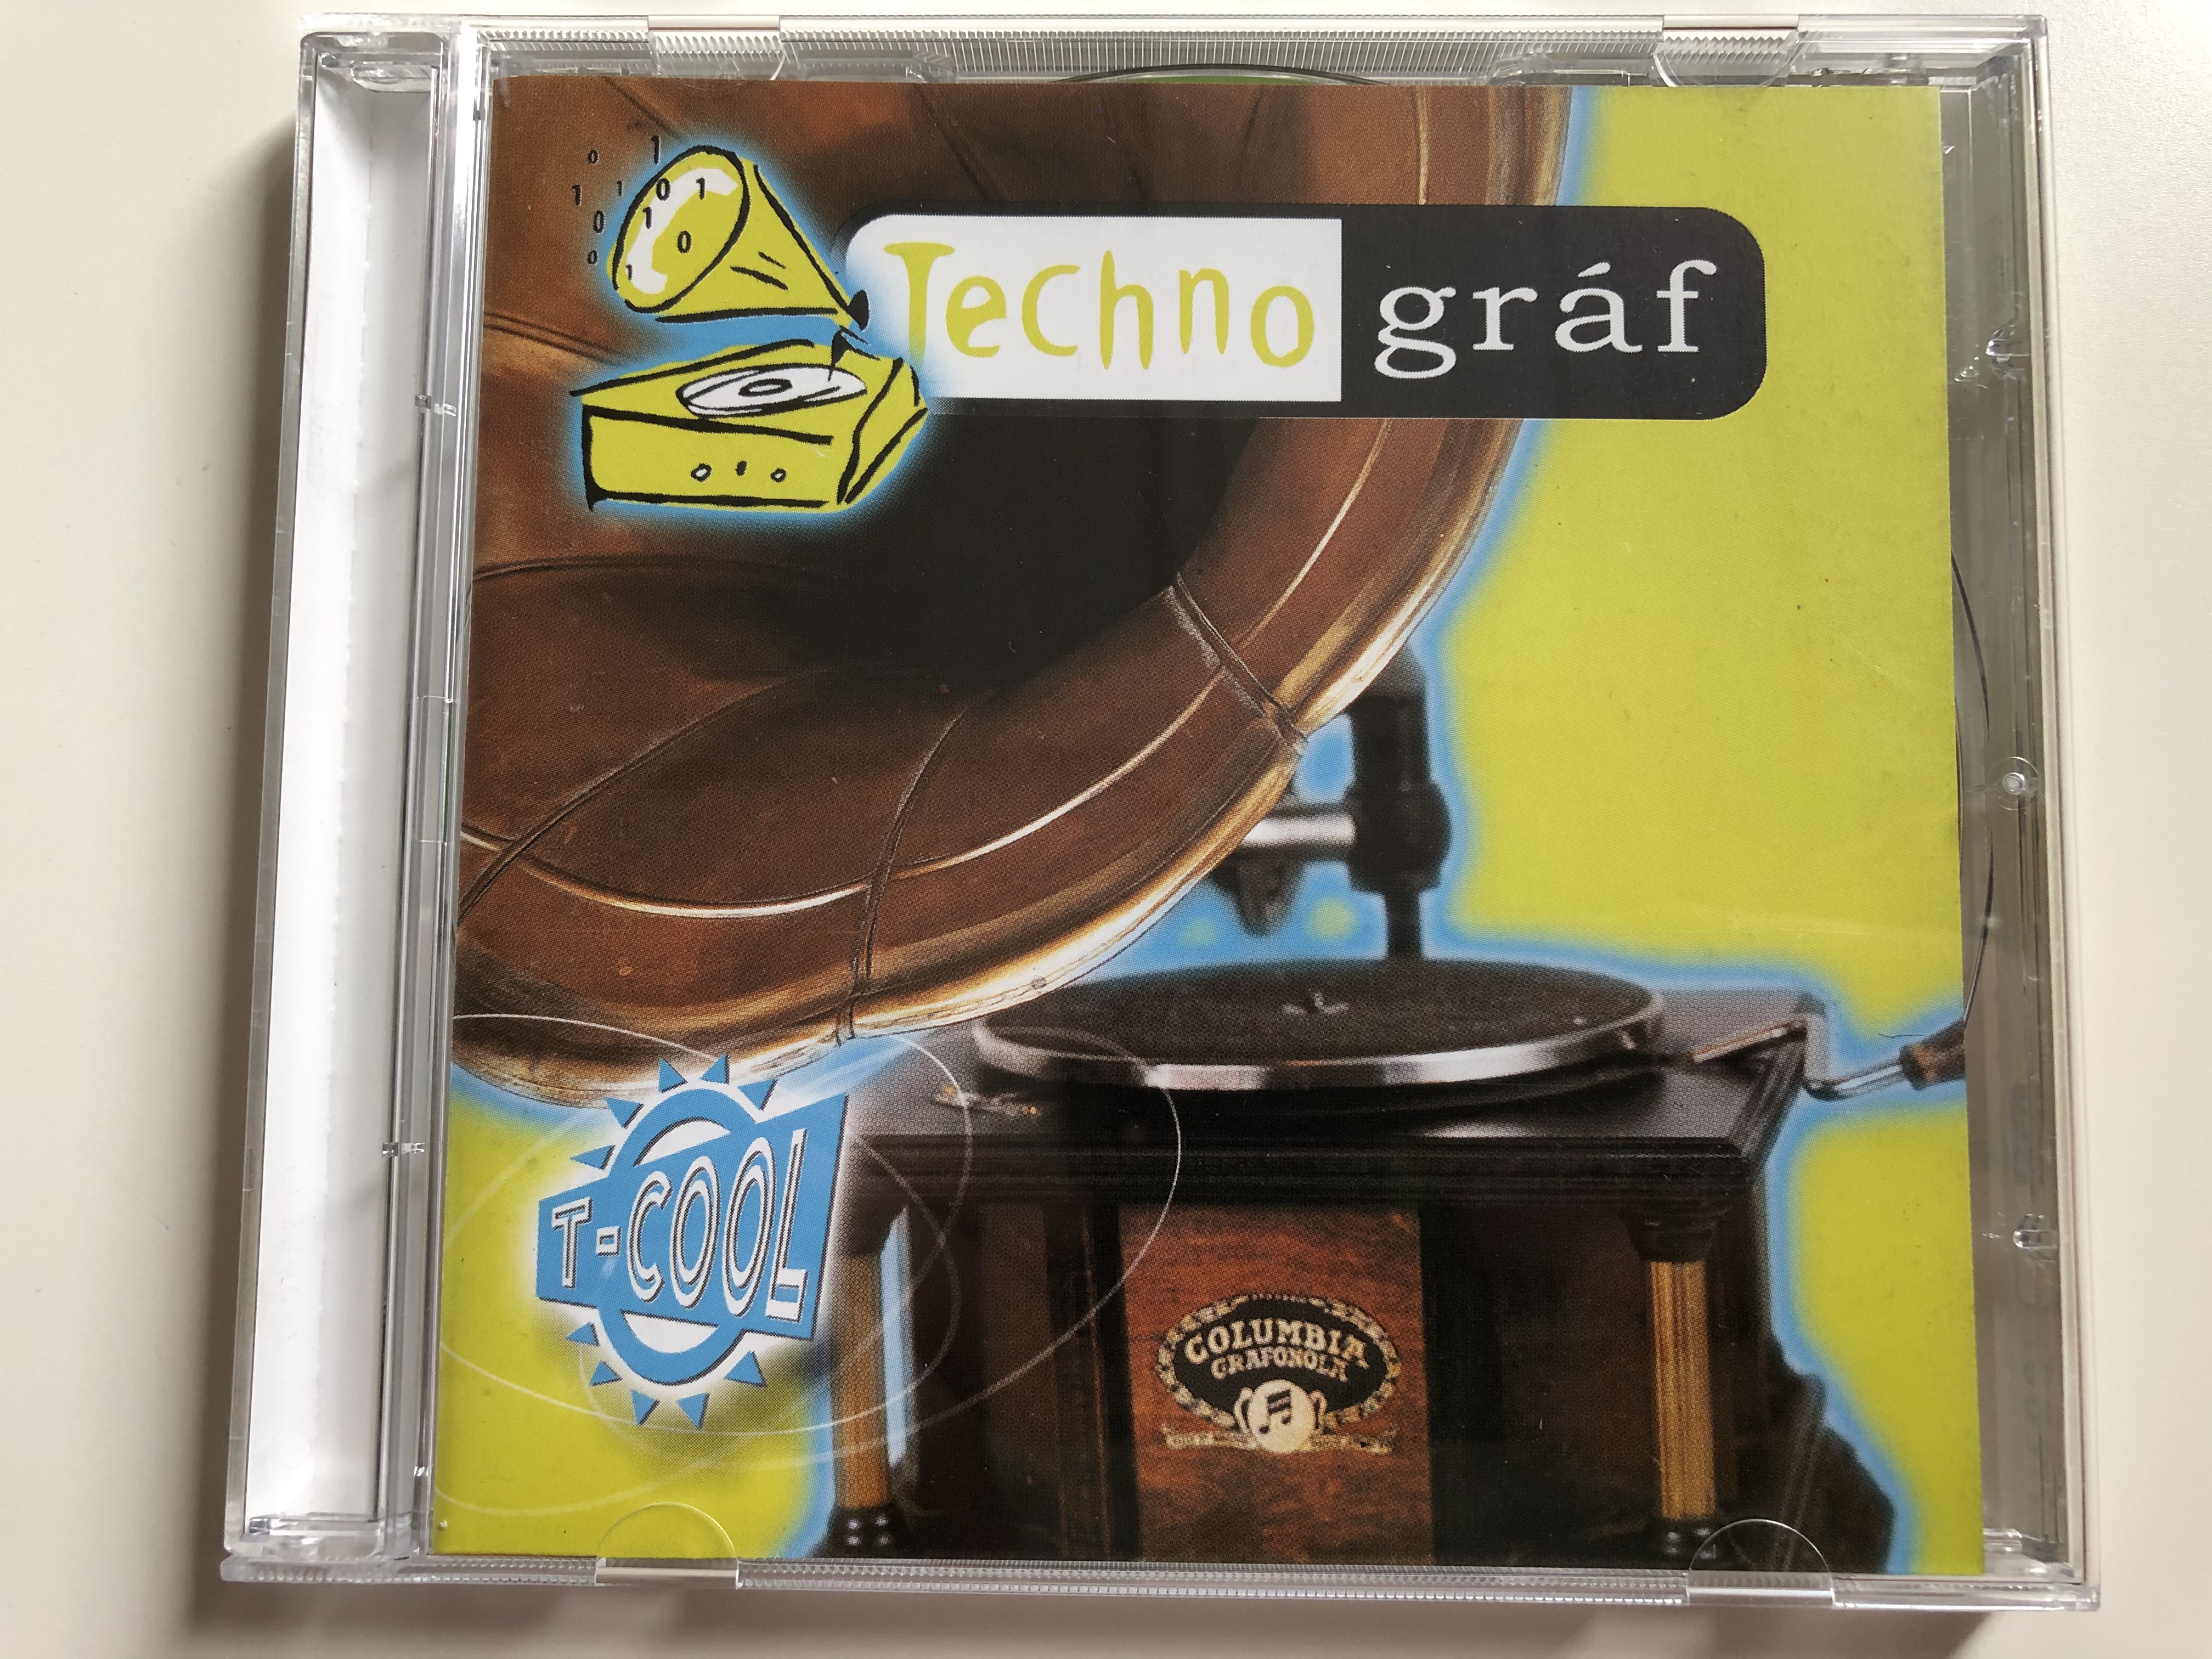 technogr-f-t-cool-premier-art-records-audio-cd-1999-068360-2-1-.jpg